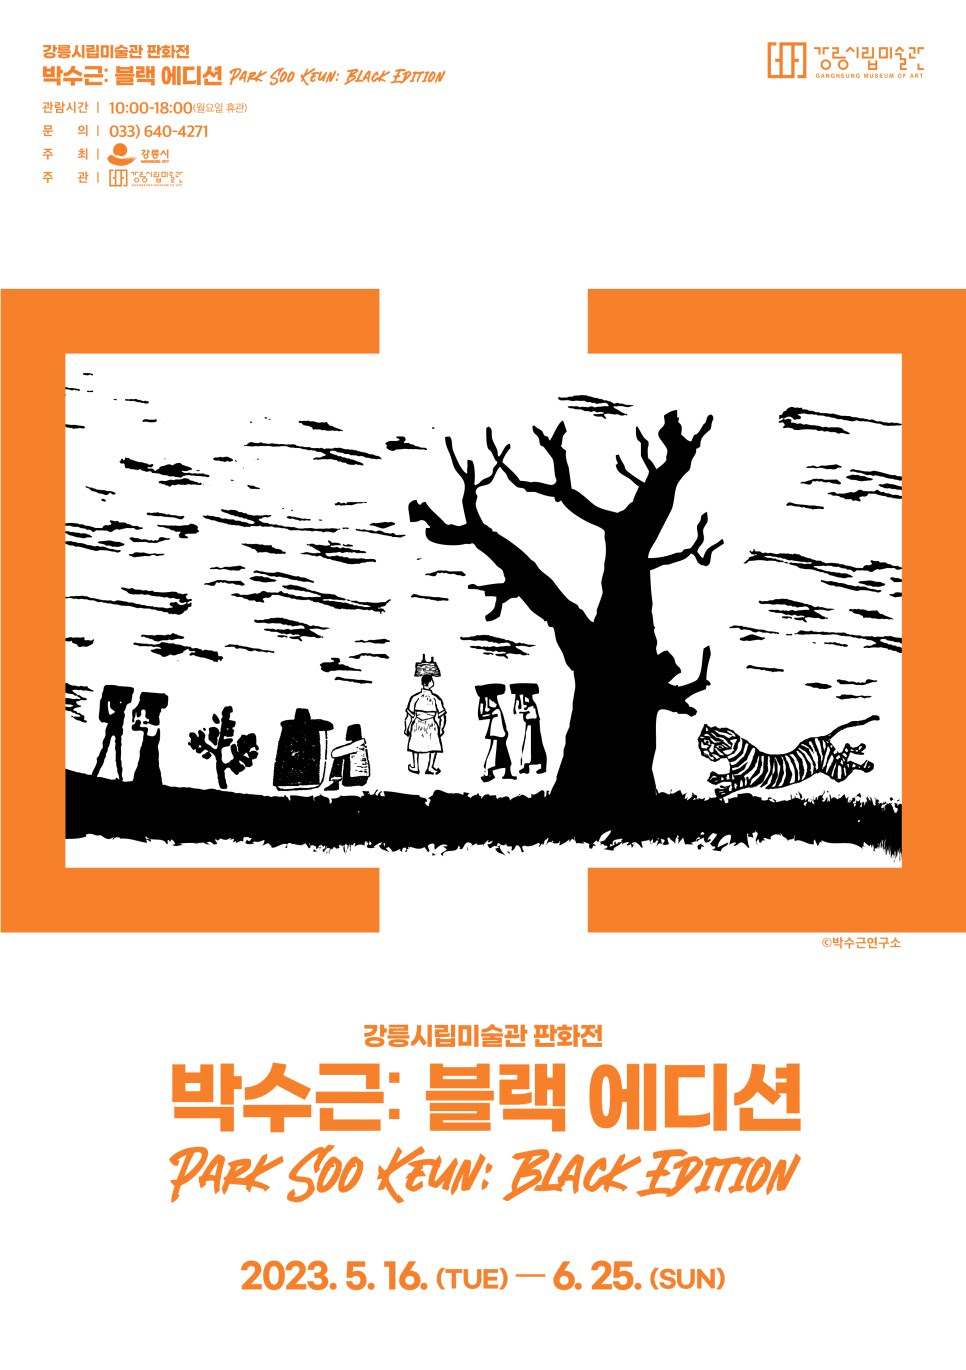 강릉시립미술관 판화전 박수근: 블랙 에디션 2023.5.16.-6.25